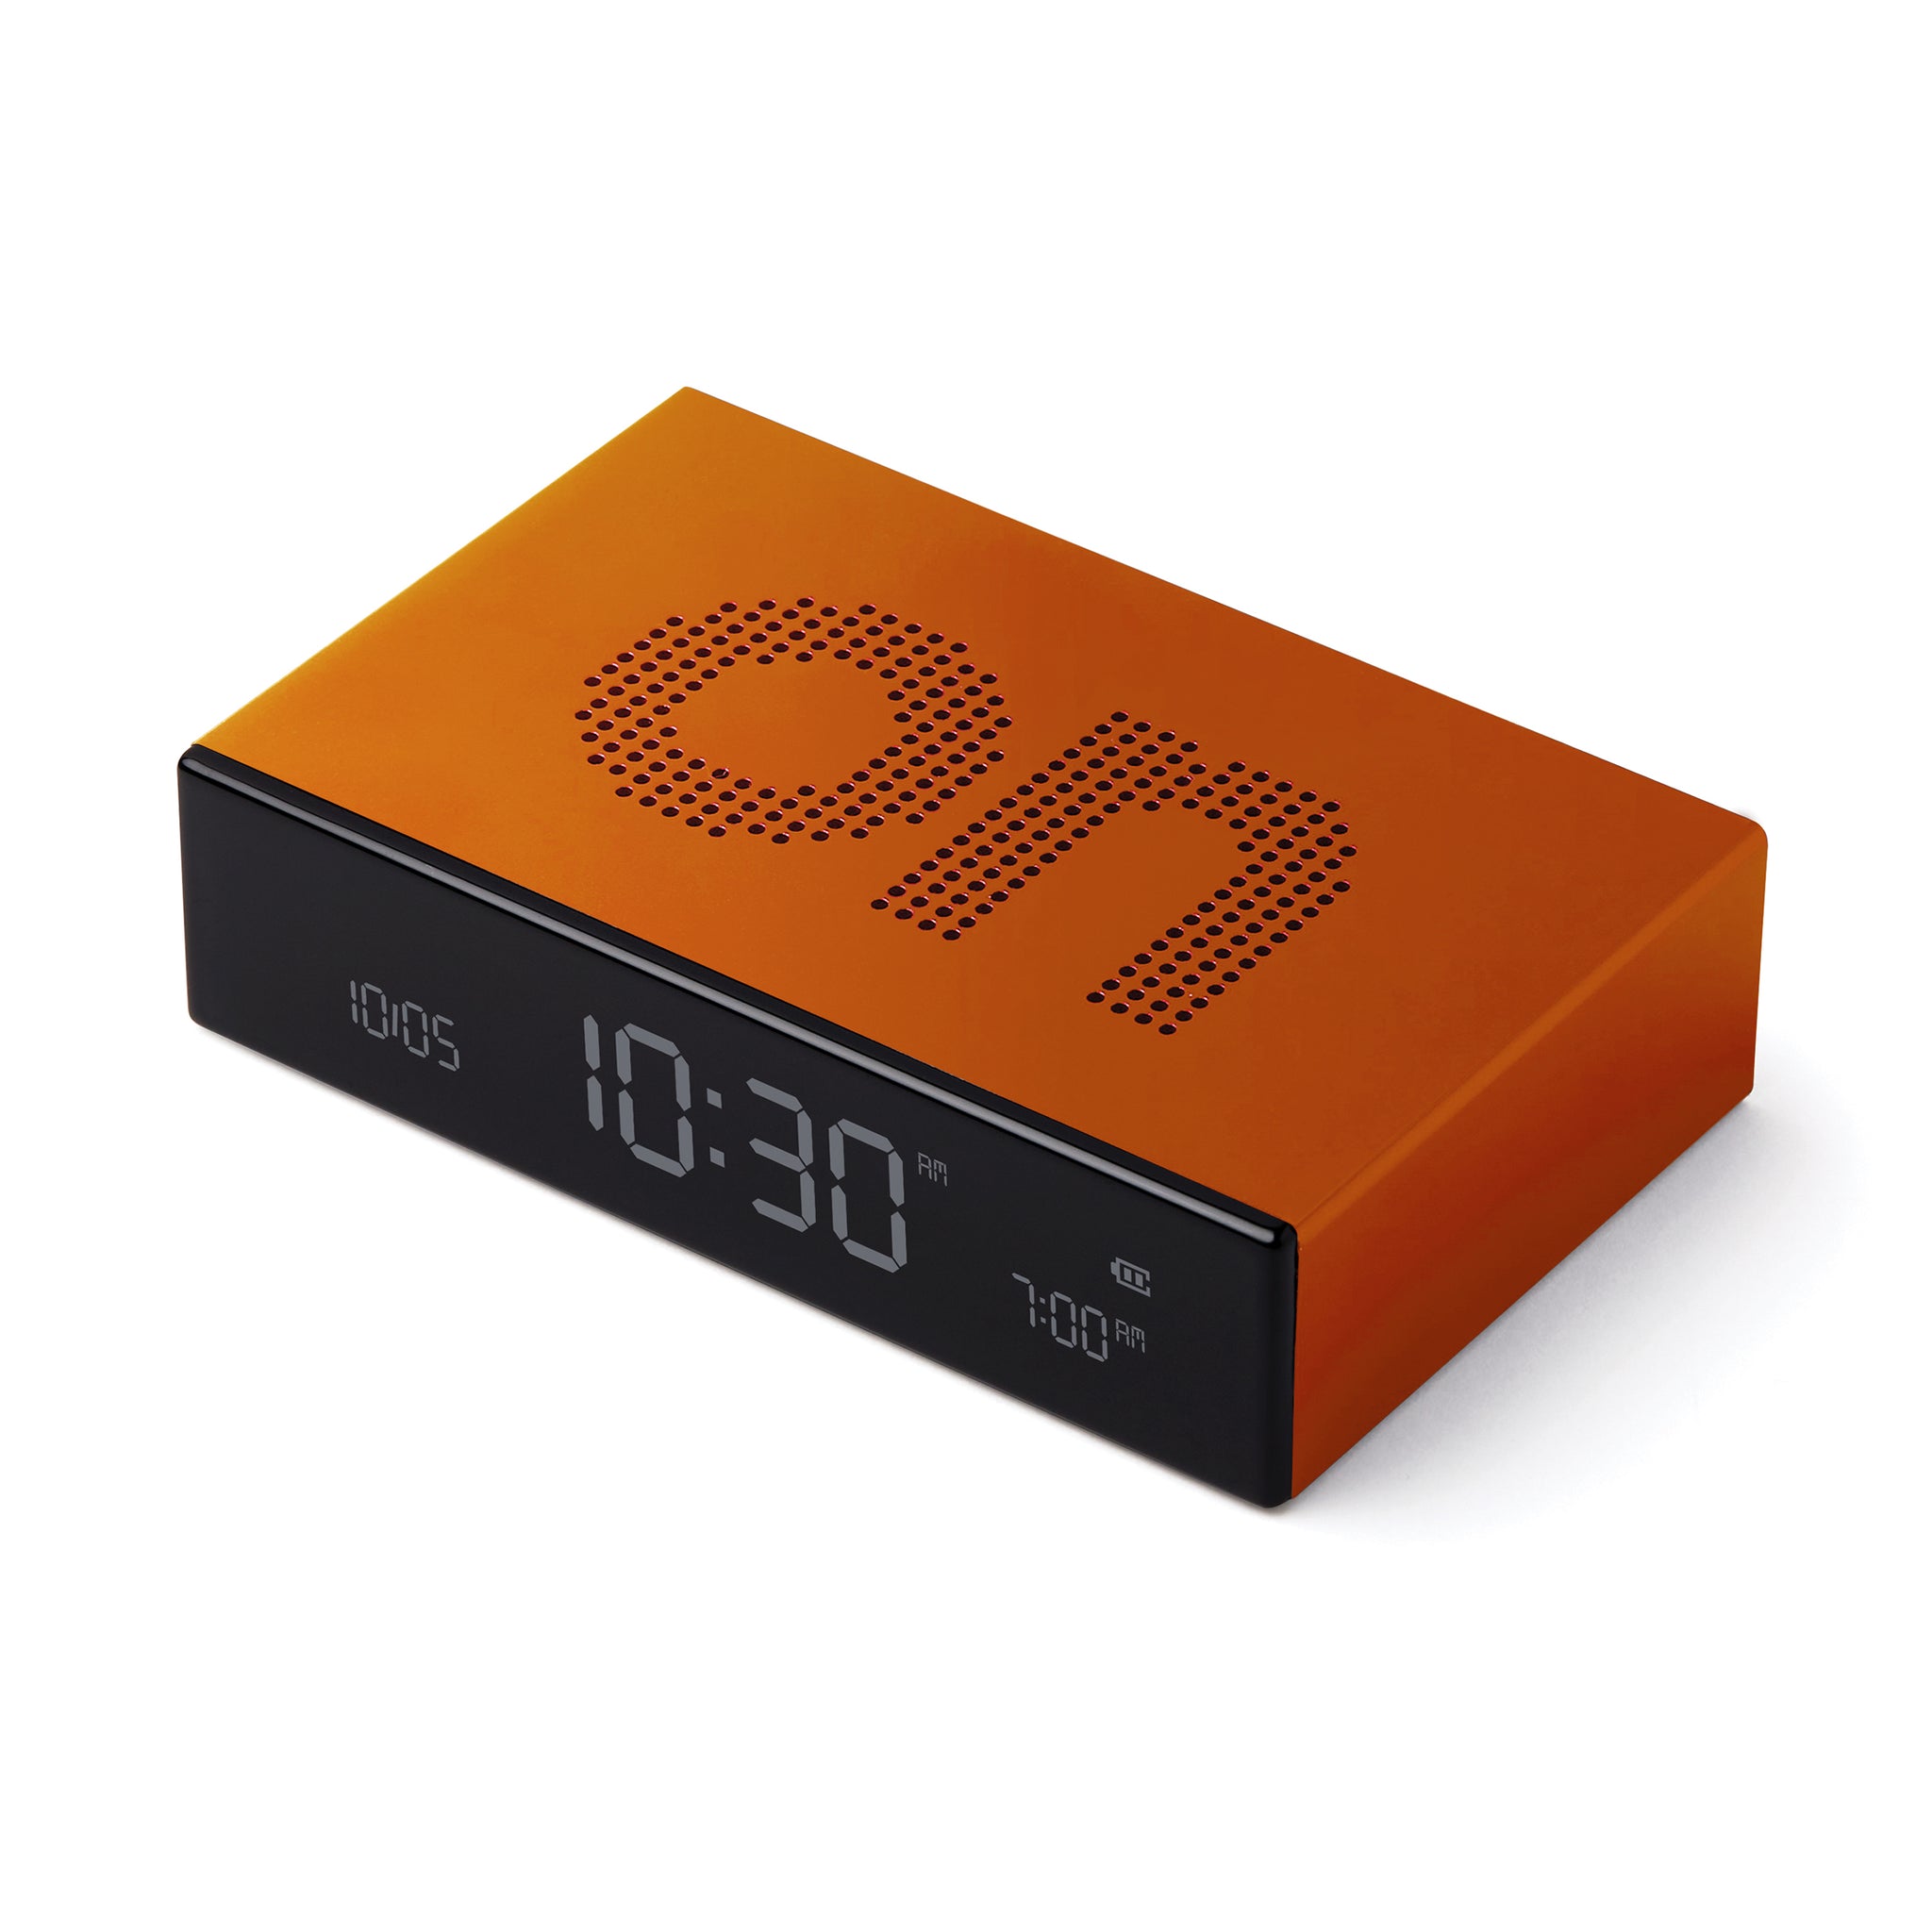 Lexon Flip Premium Wekker Oranje│Art. LR152O1│bovenkant schuin met On-teken aan bovenzijde